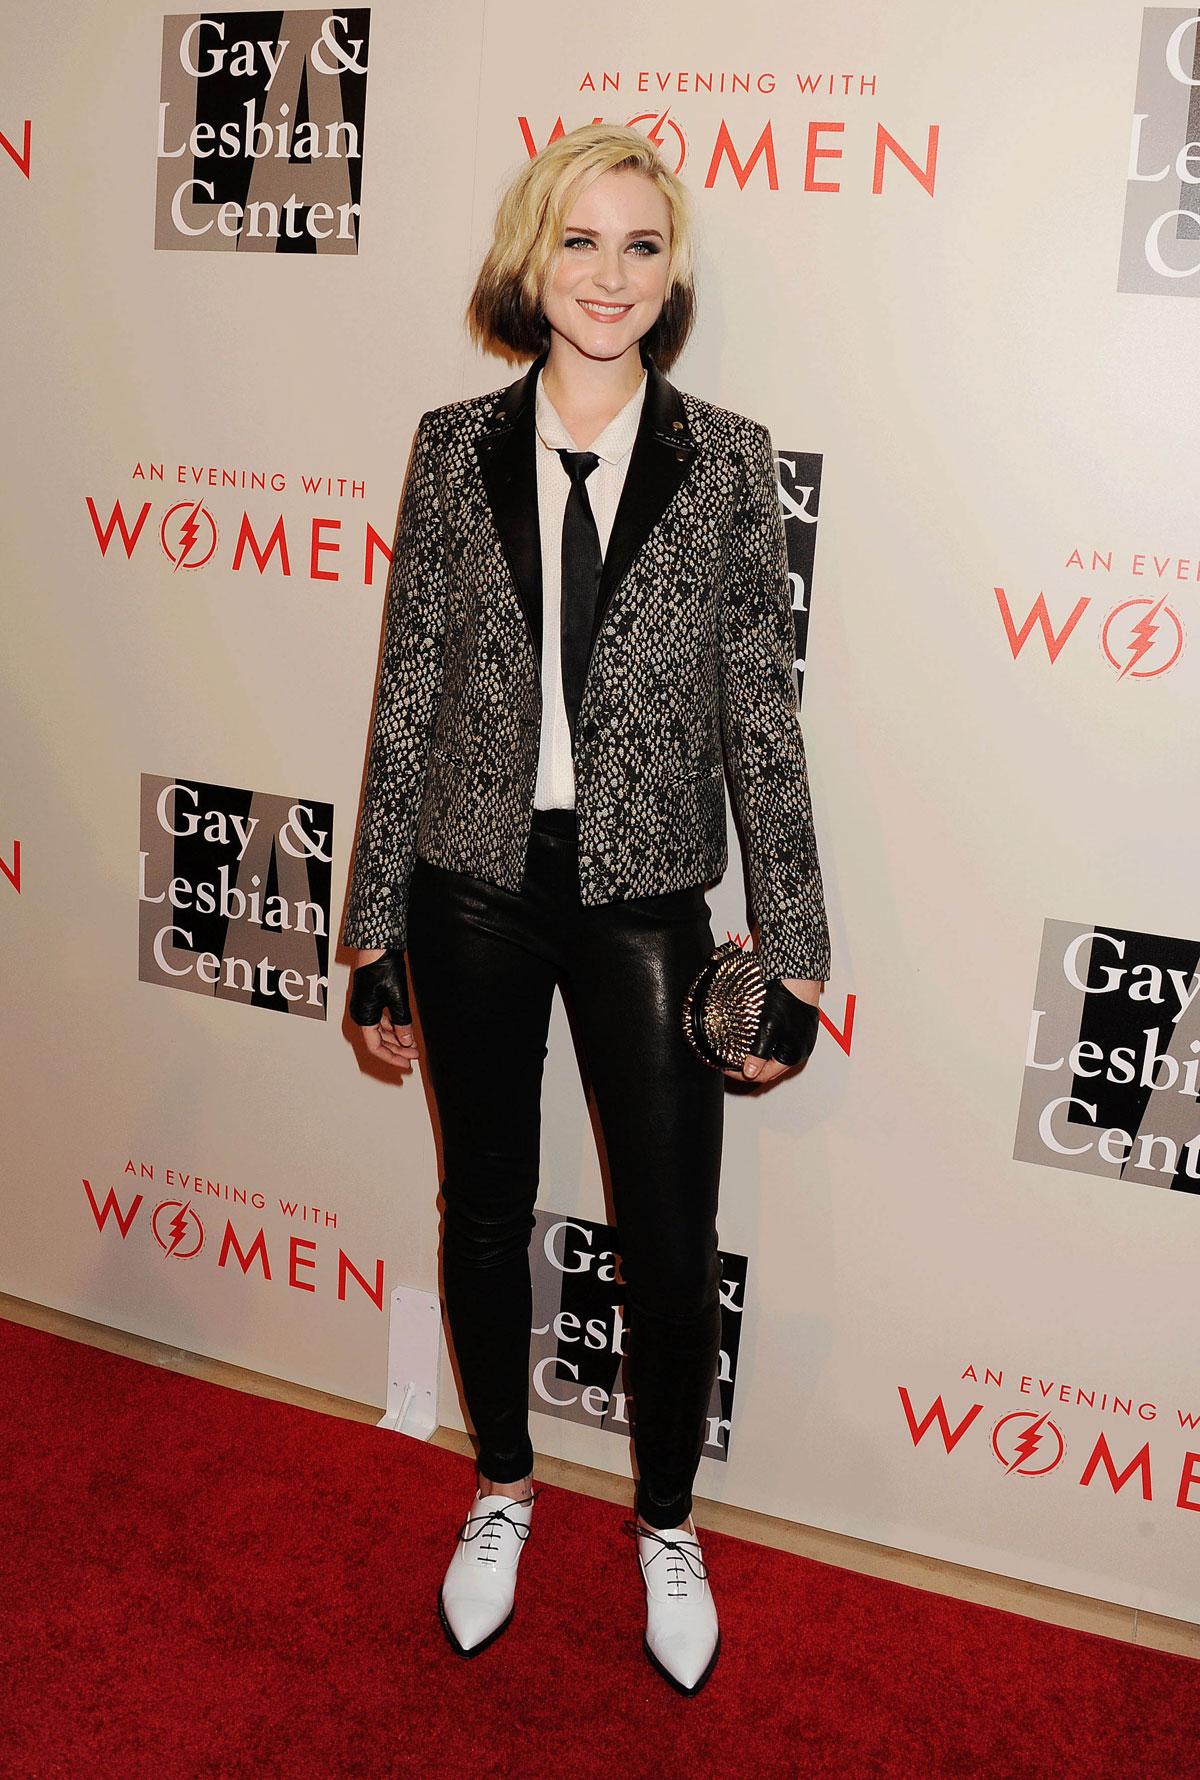 Evan Rachel Wood attends Evening with Women event